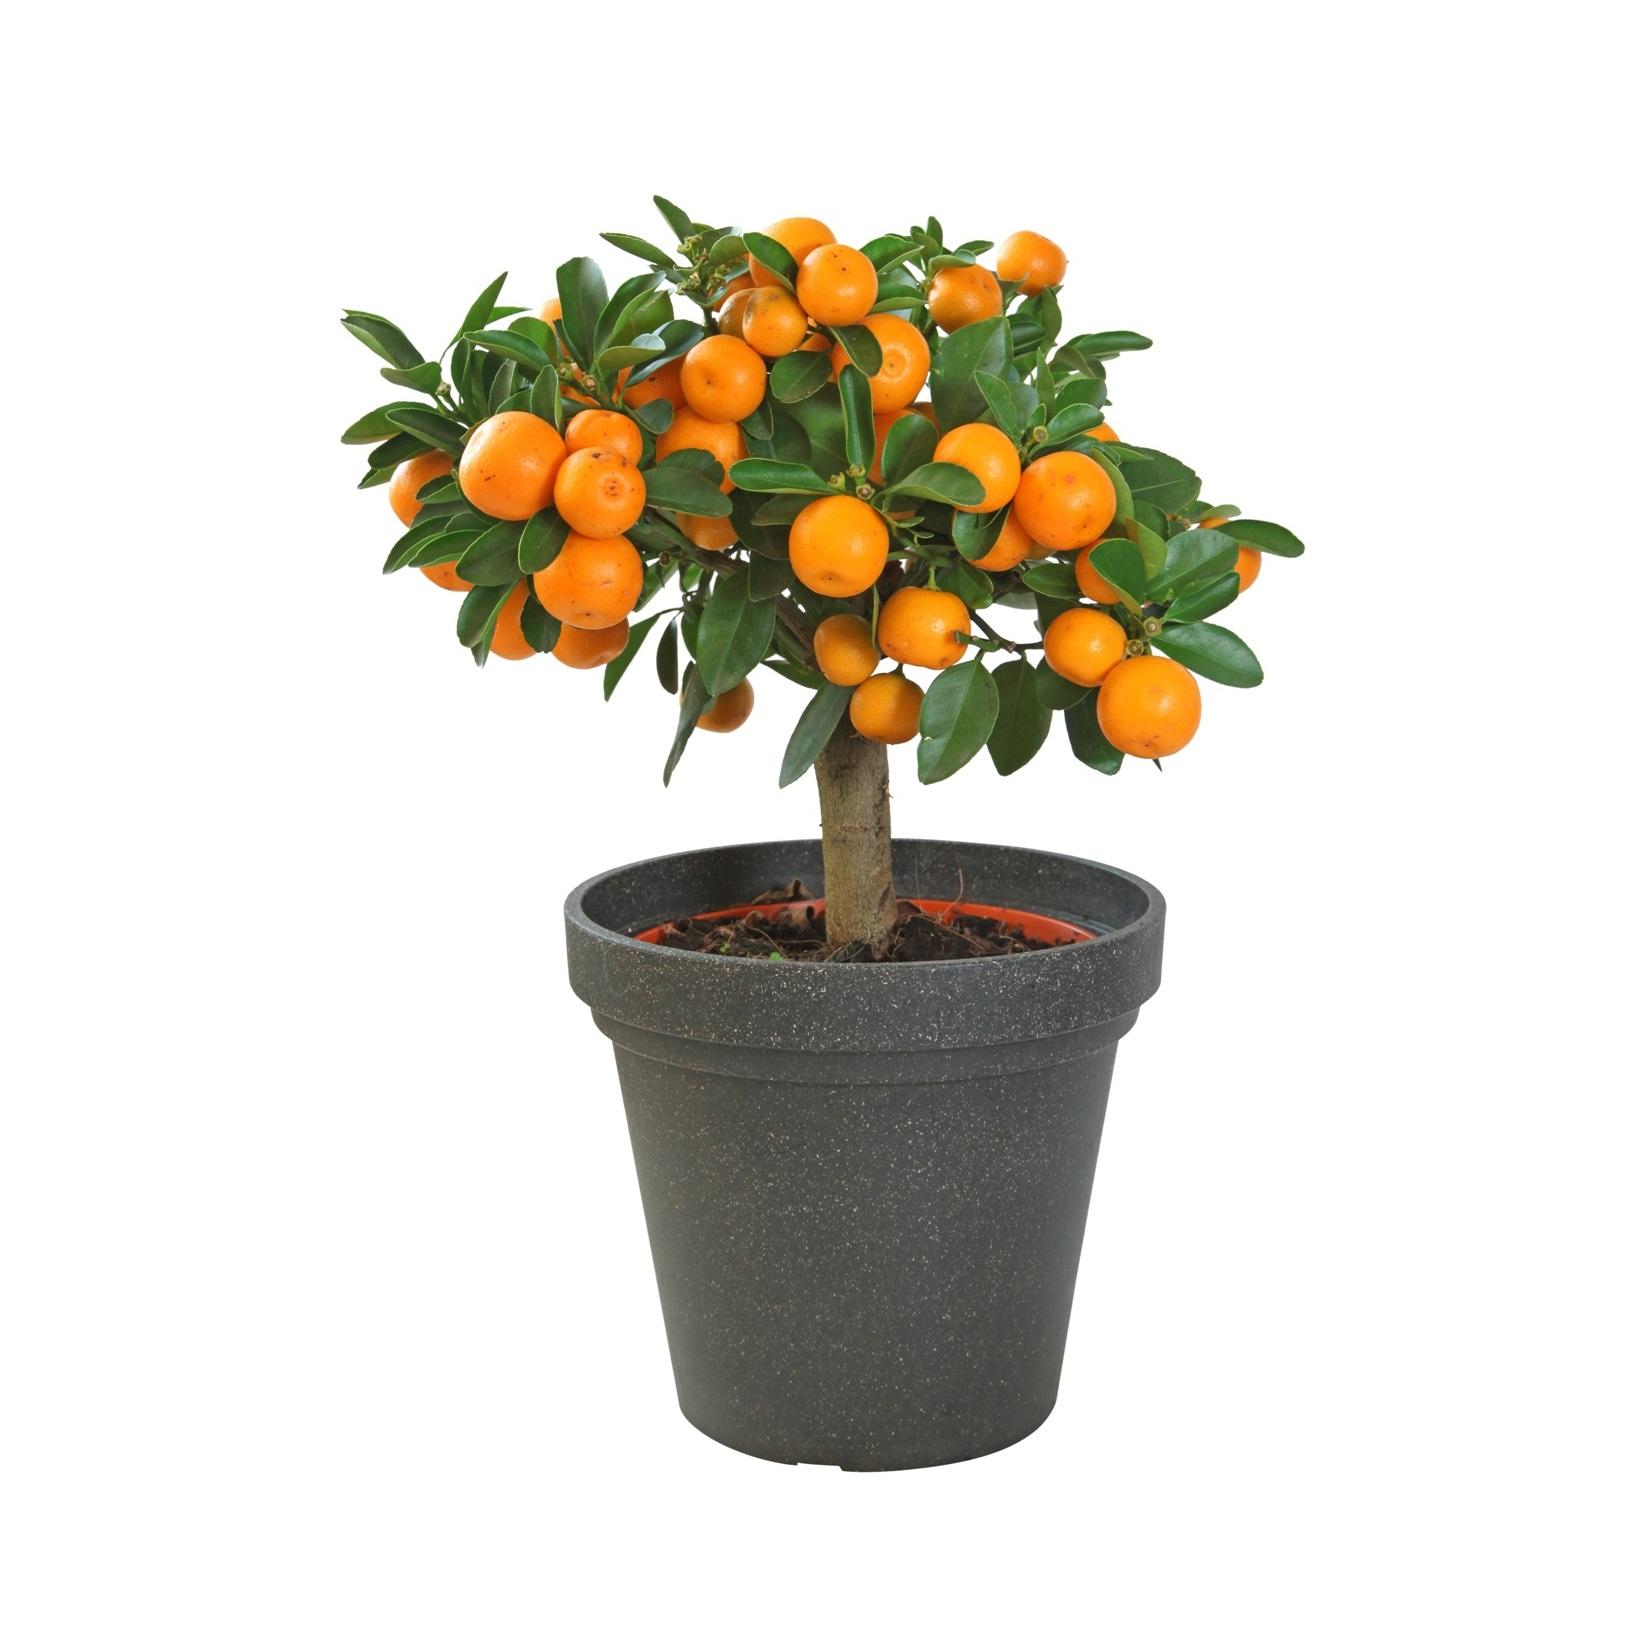 Комнатные плодовые. Мандариновое дерево в горшке. Citrus Dwarf Dwarf Citrus. Апельсин в горшке. Мини мандарин дерево.